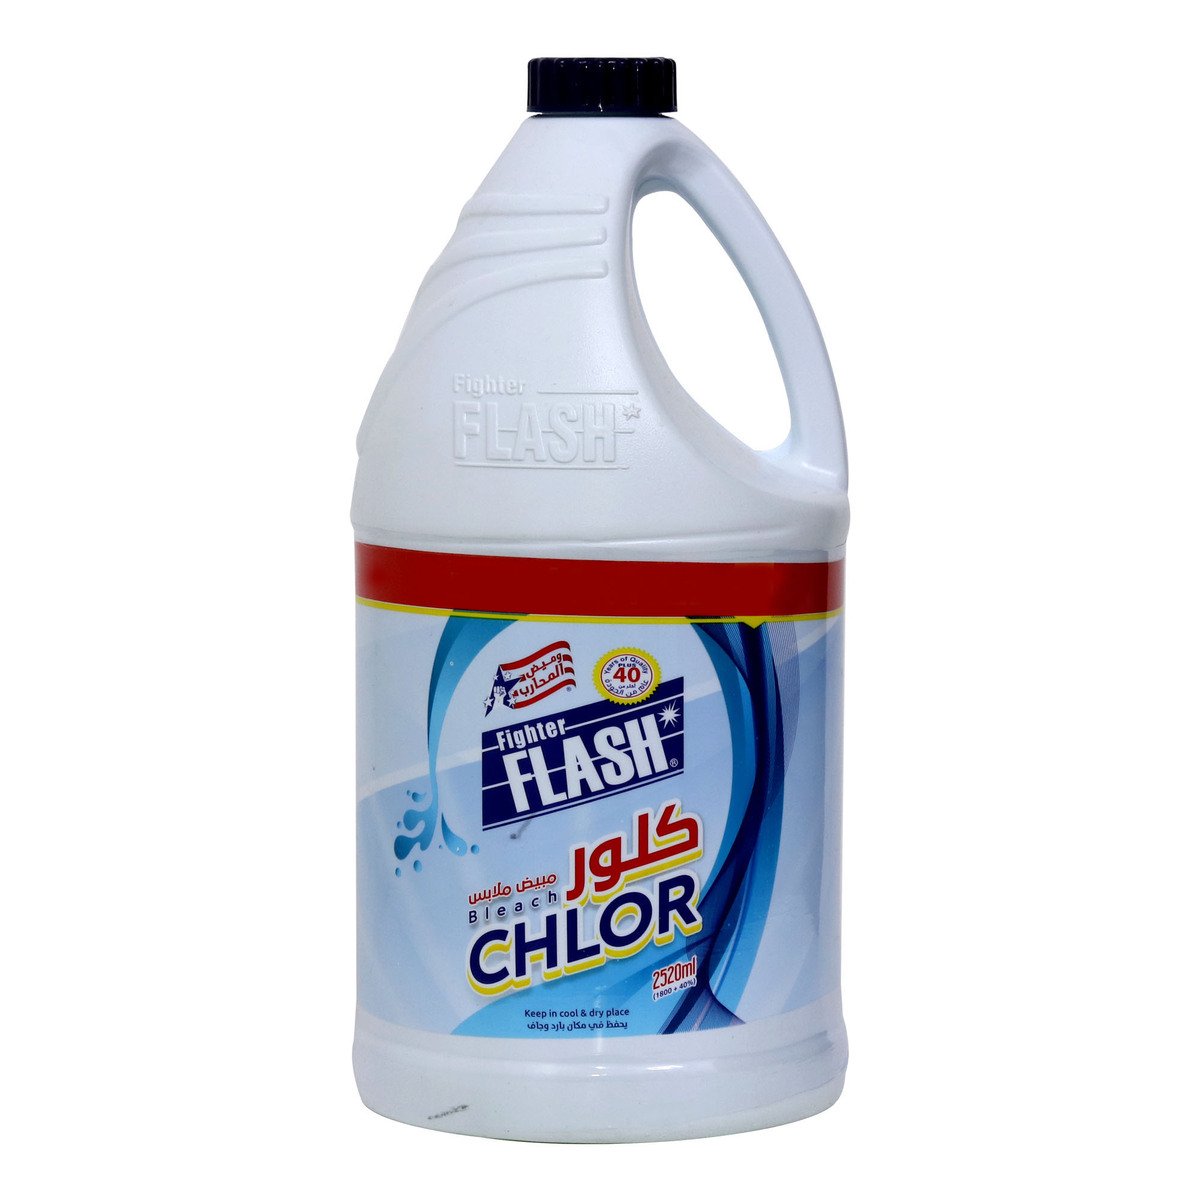 Fighter Flash Chlor Bleach 1.8Litre